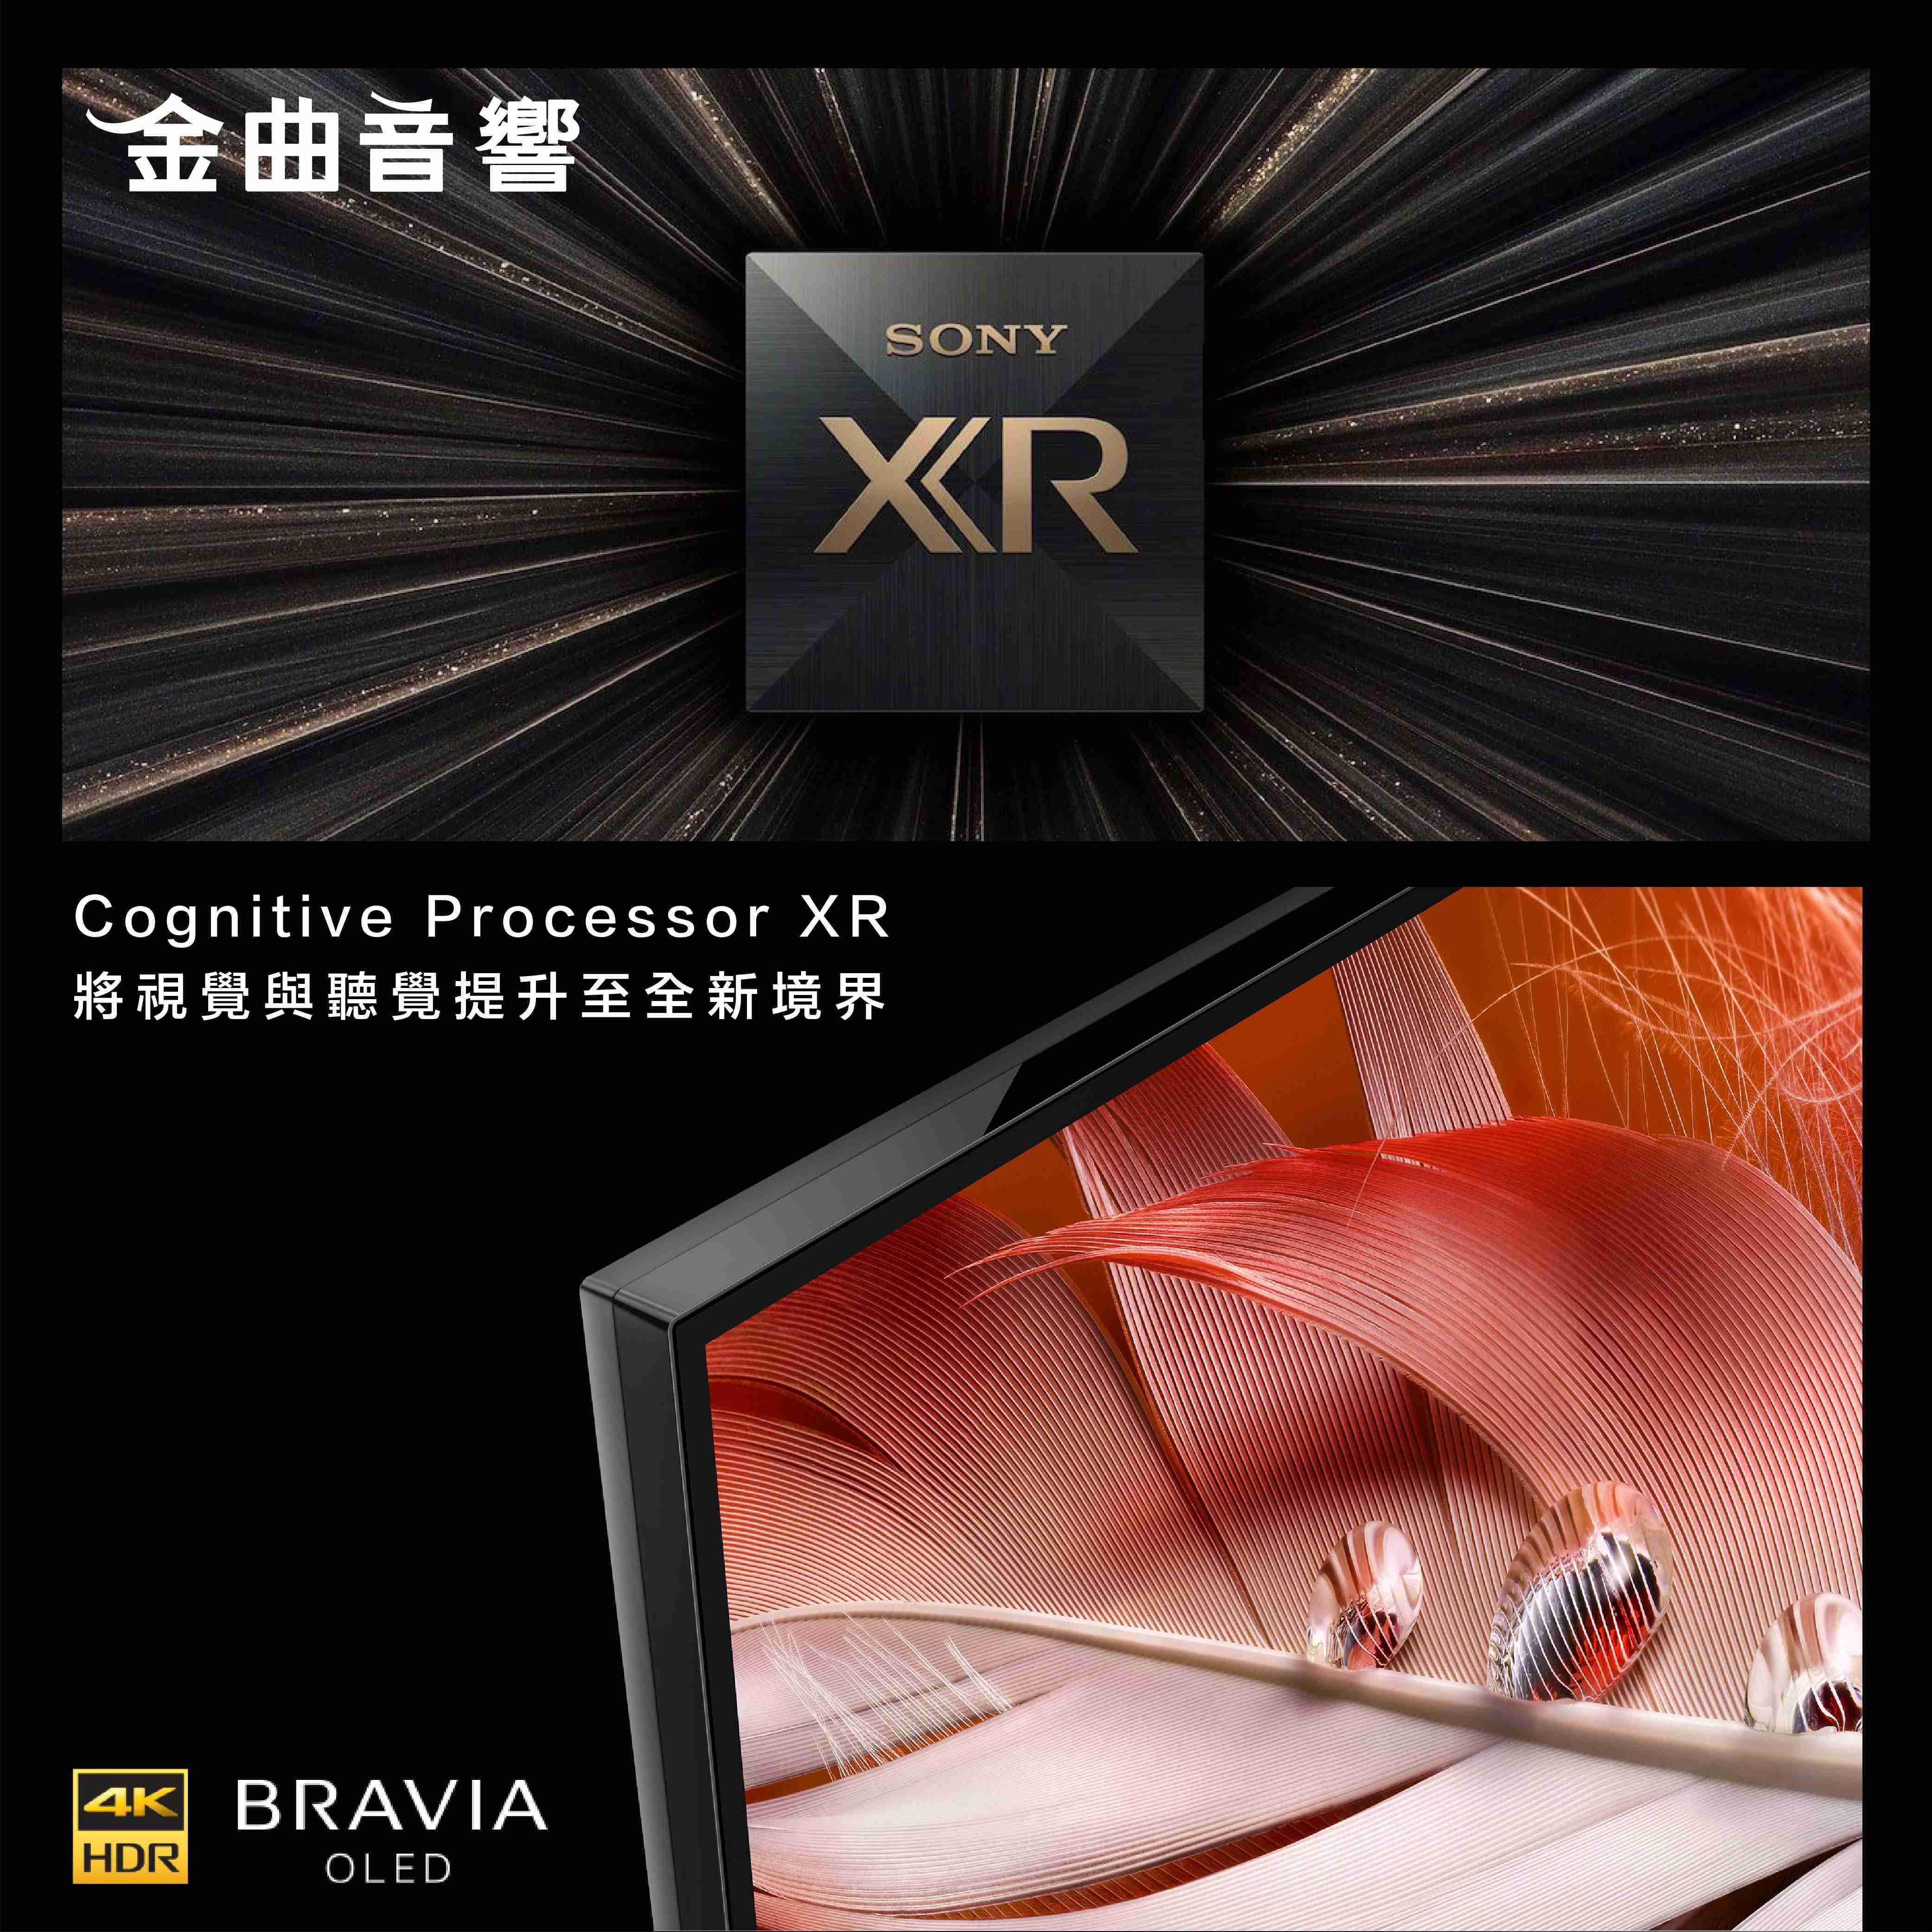 SONY 索尼 50吋 XRM-50X90J 4K 全陣列LED XR 液晶 電視 2021 | 金曲音響